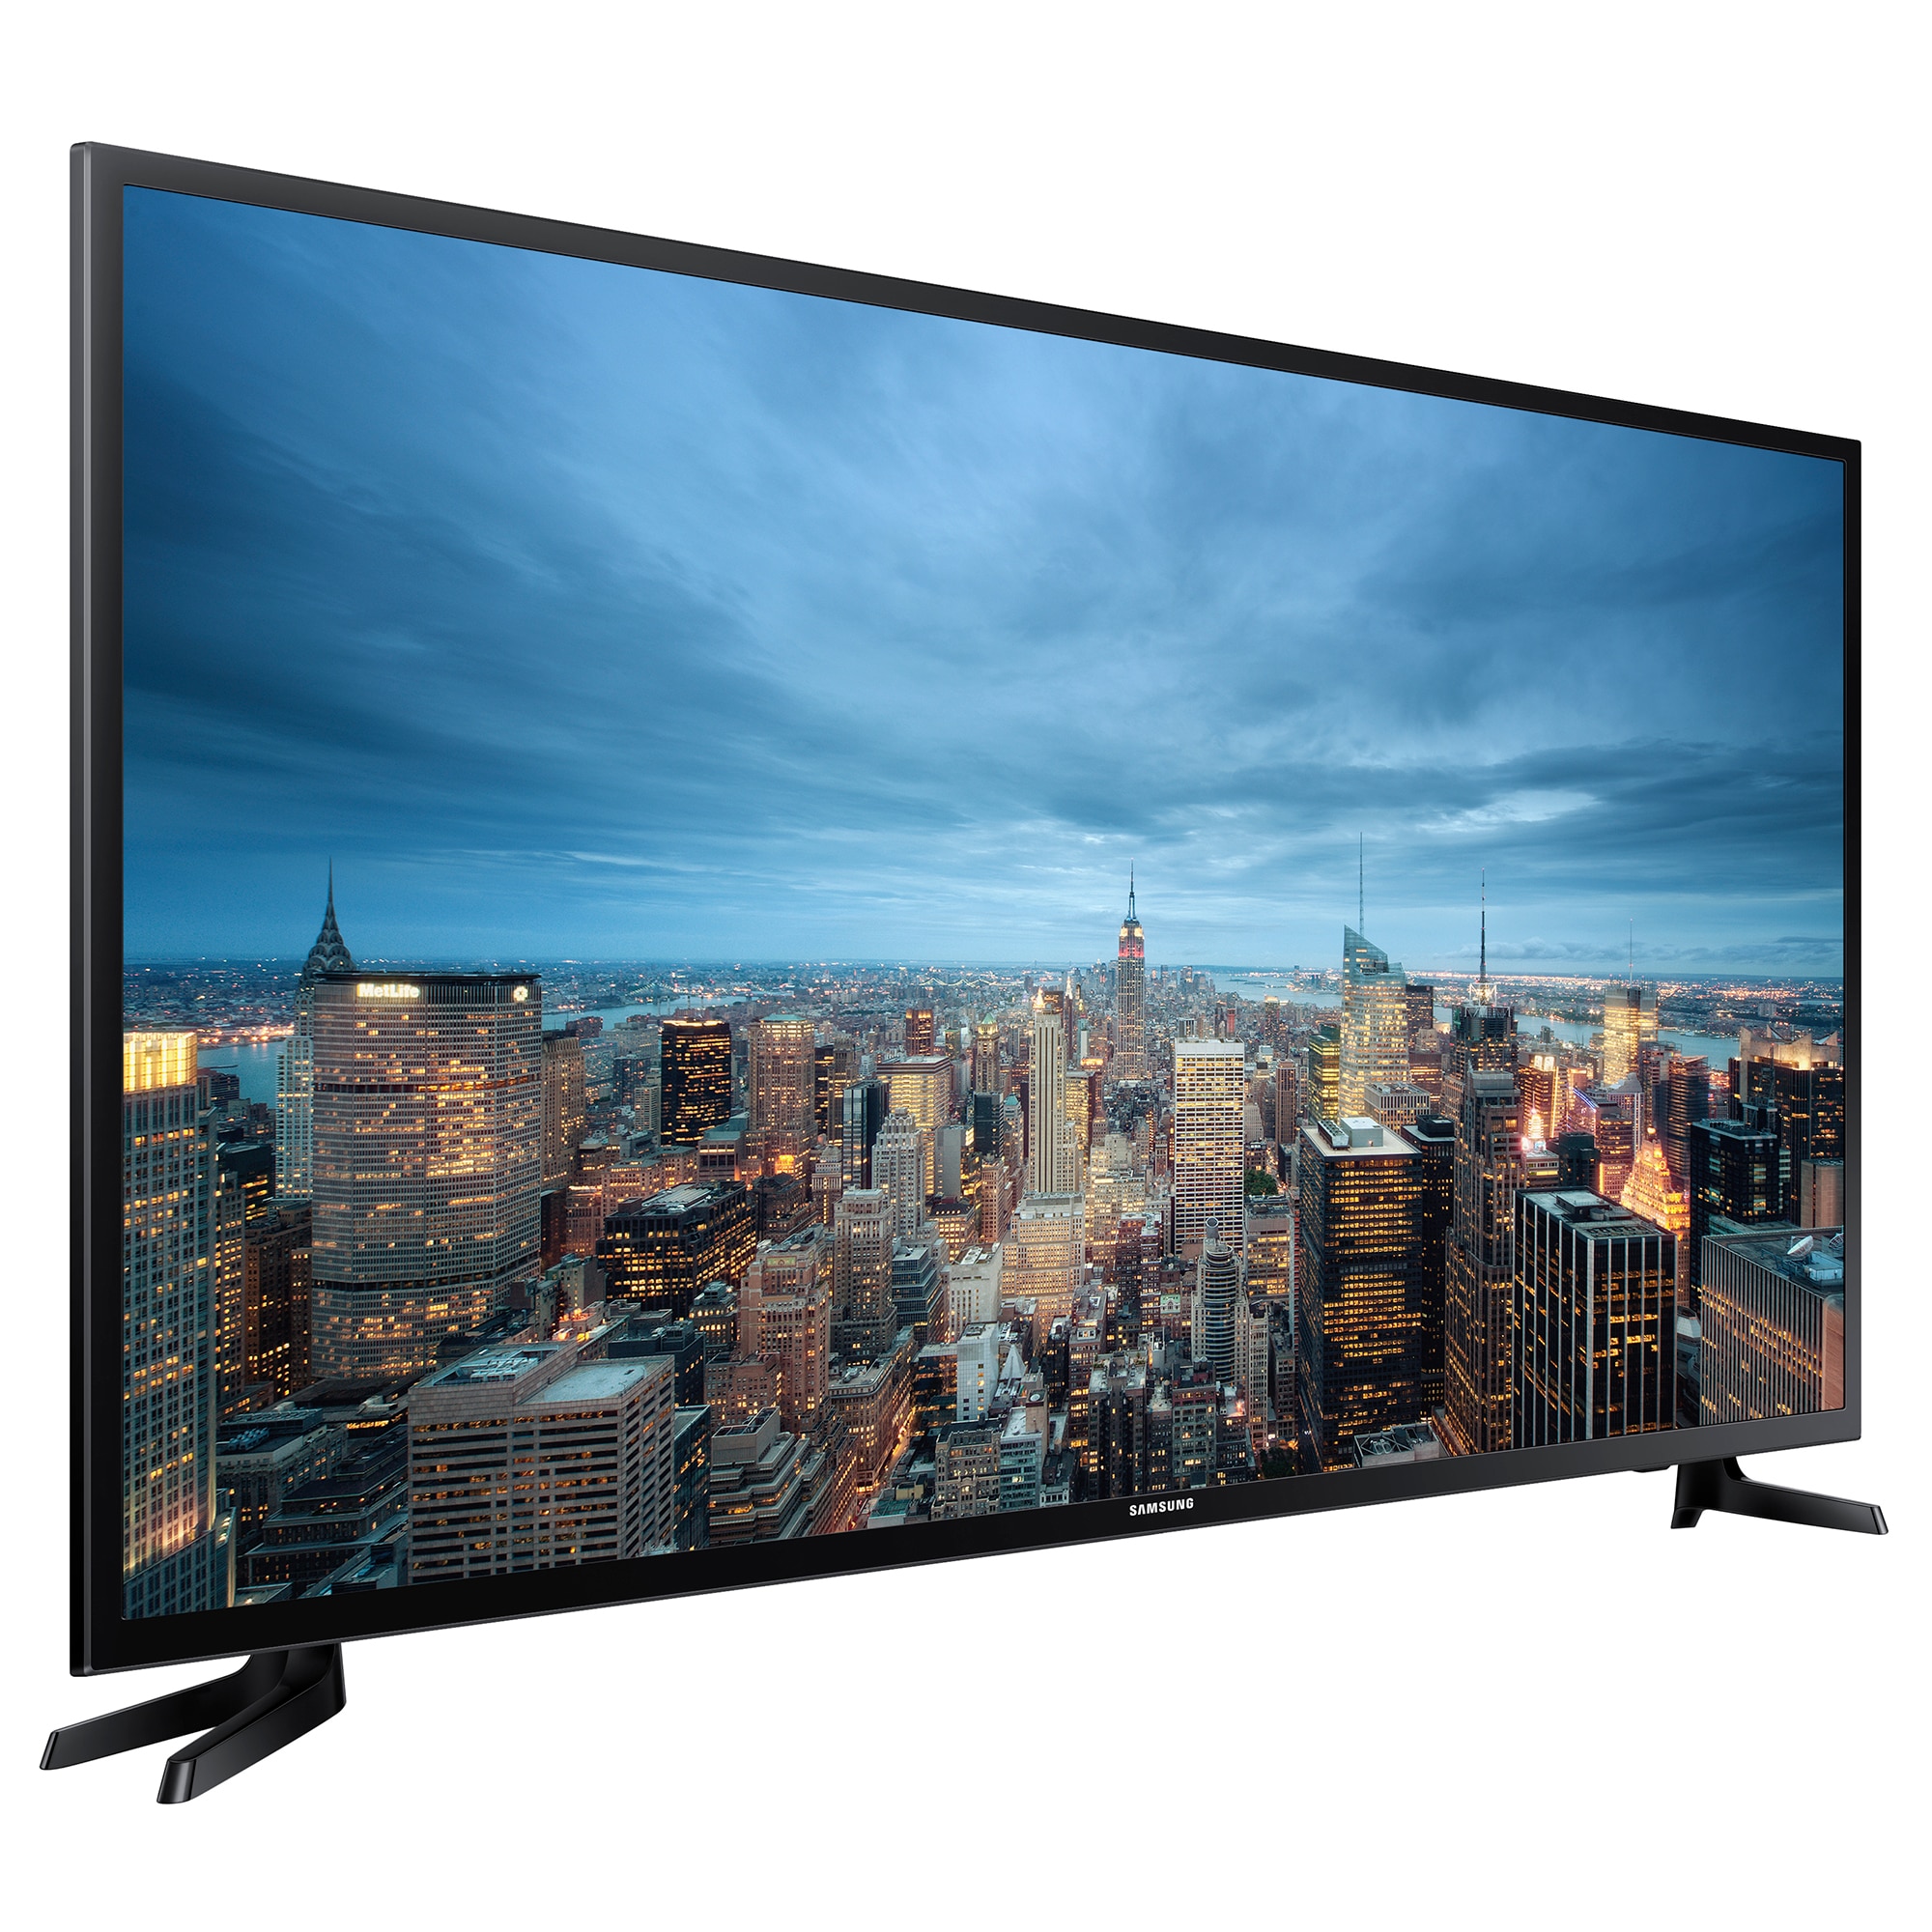 Телевизоры самсунг краснодар. Samsung ue55ju6530u. Samsung ue43ju6000u. Samsung Smart TV 40. Телевизор Samsung ue48ju6000u 48" (2015).